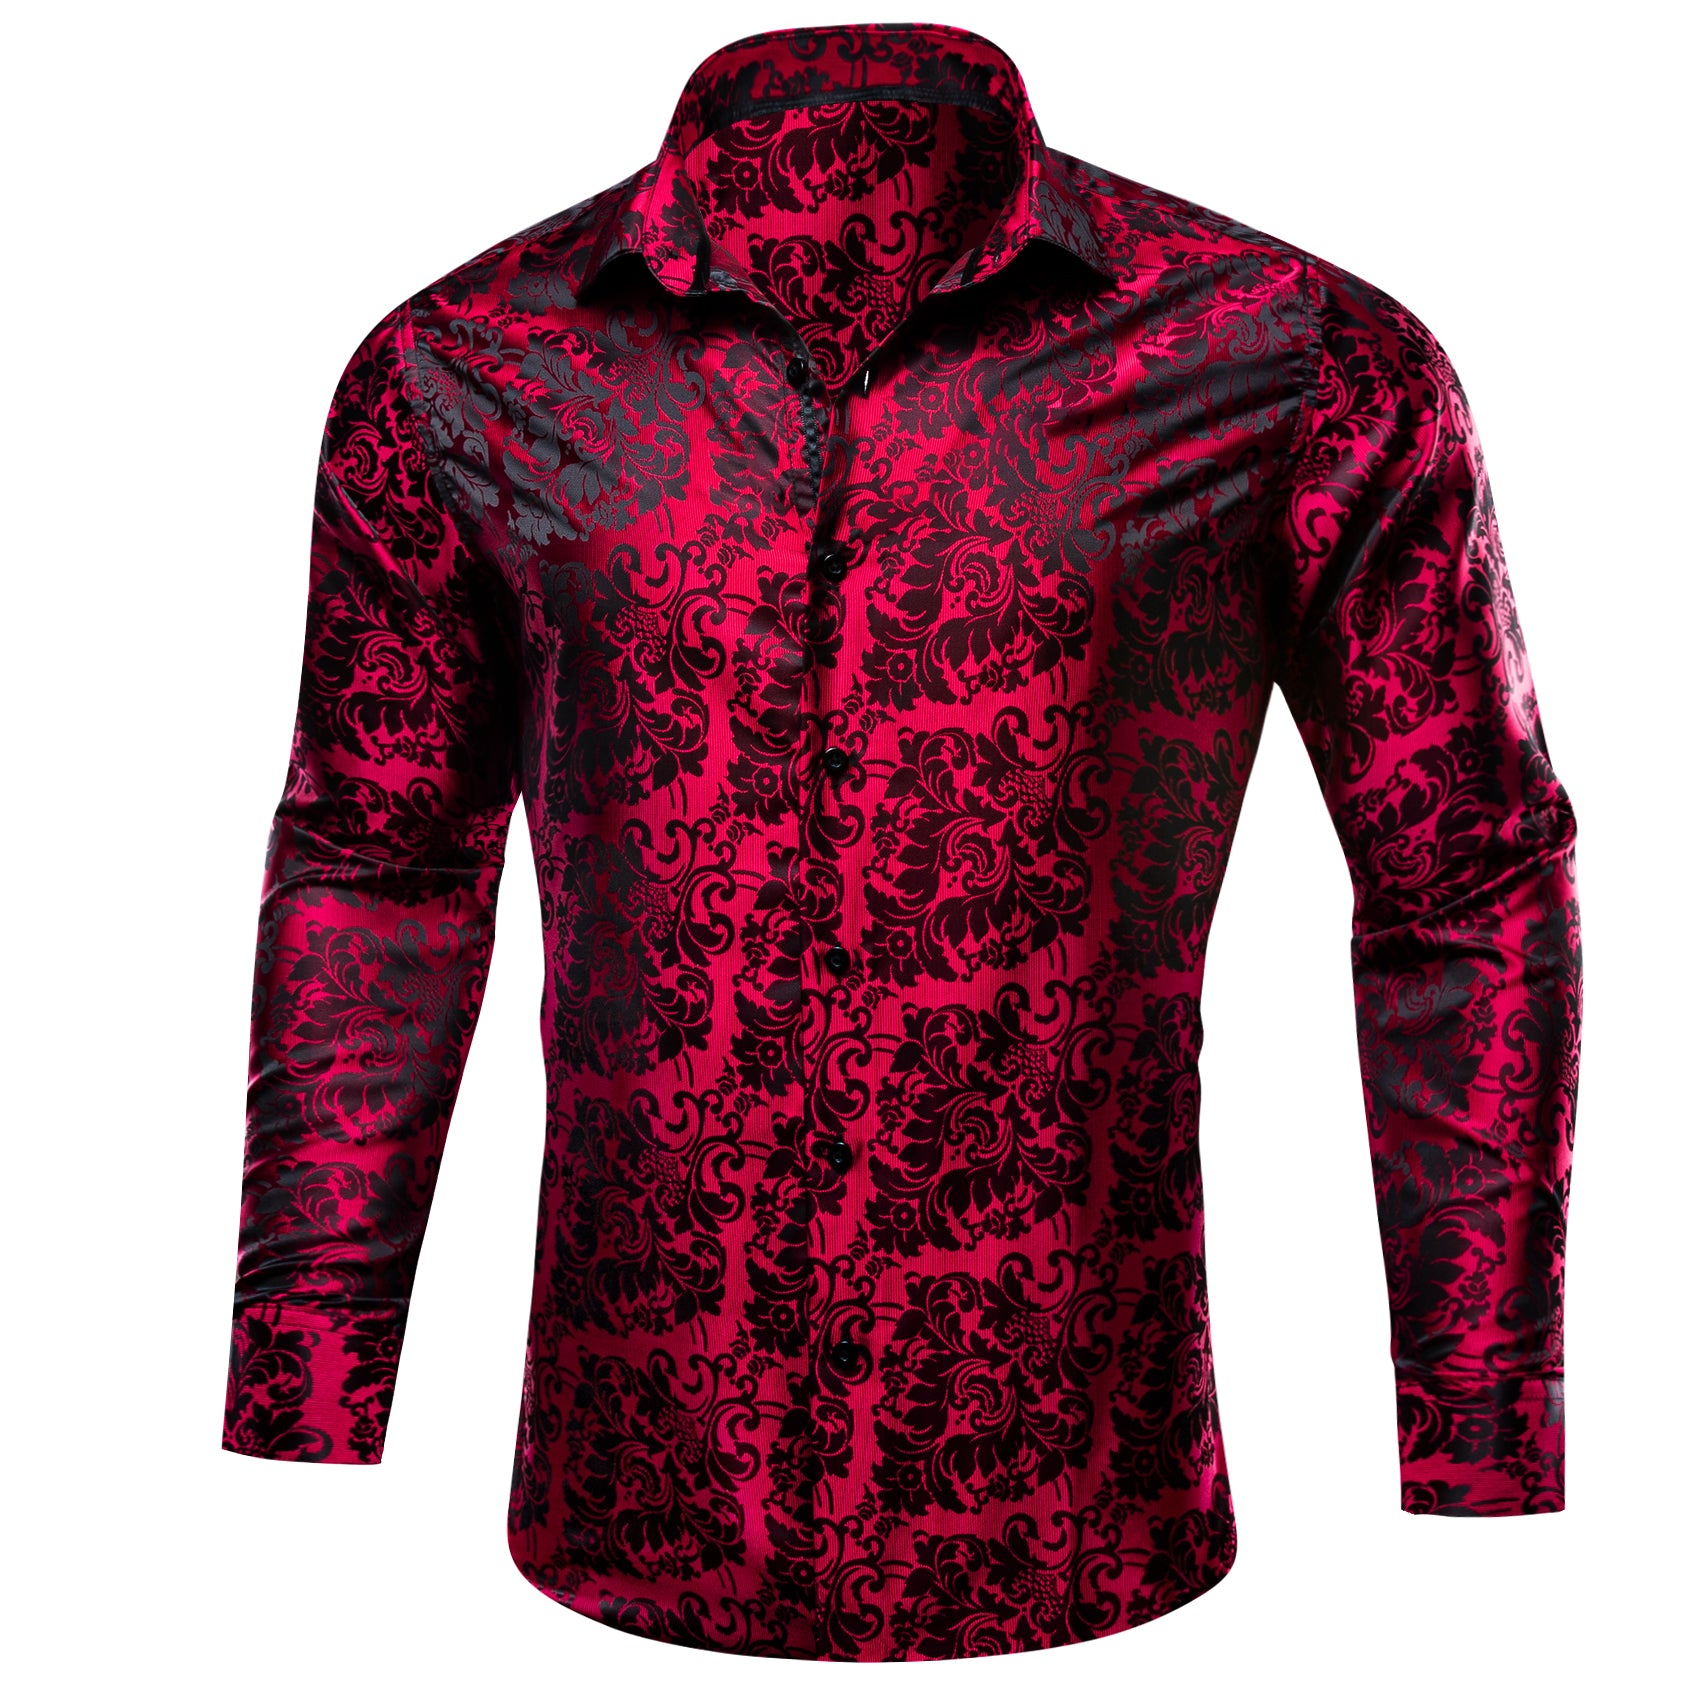 Barry.wang Button Down Shirt Red Black Floral Dress Silk Shirt for Men